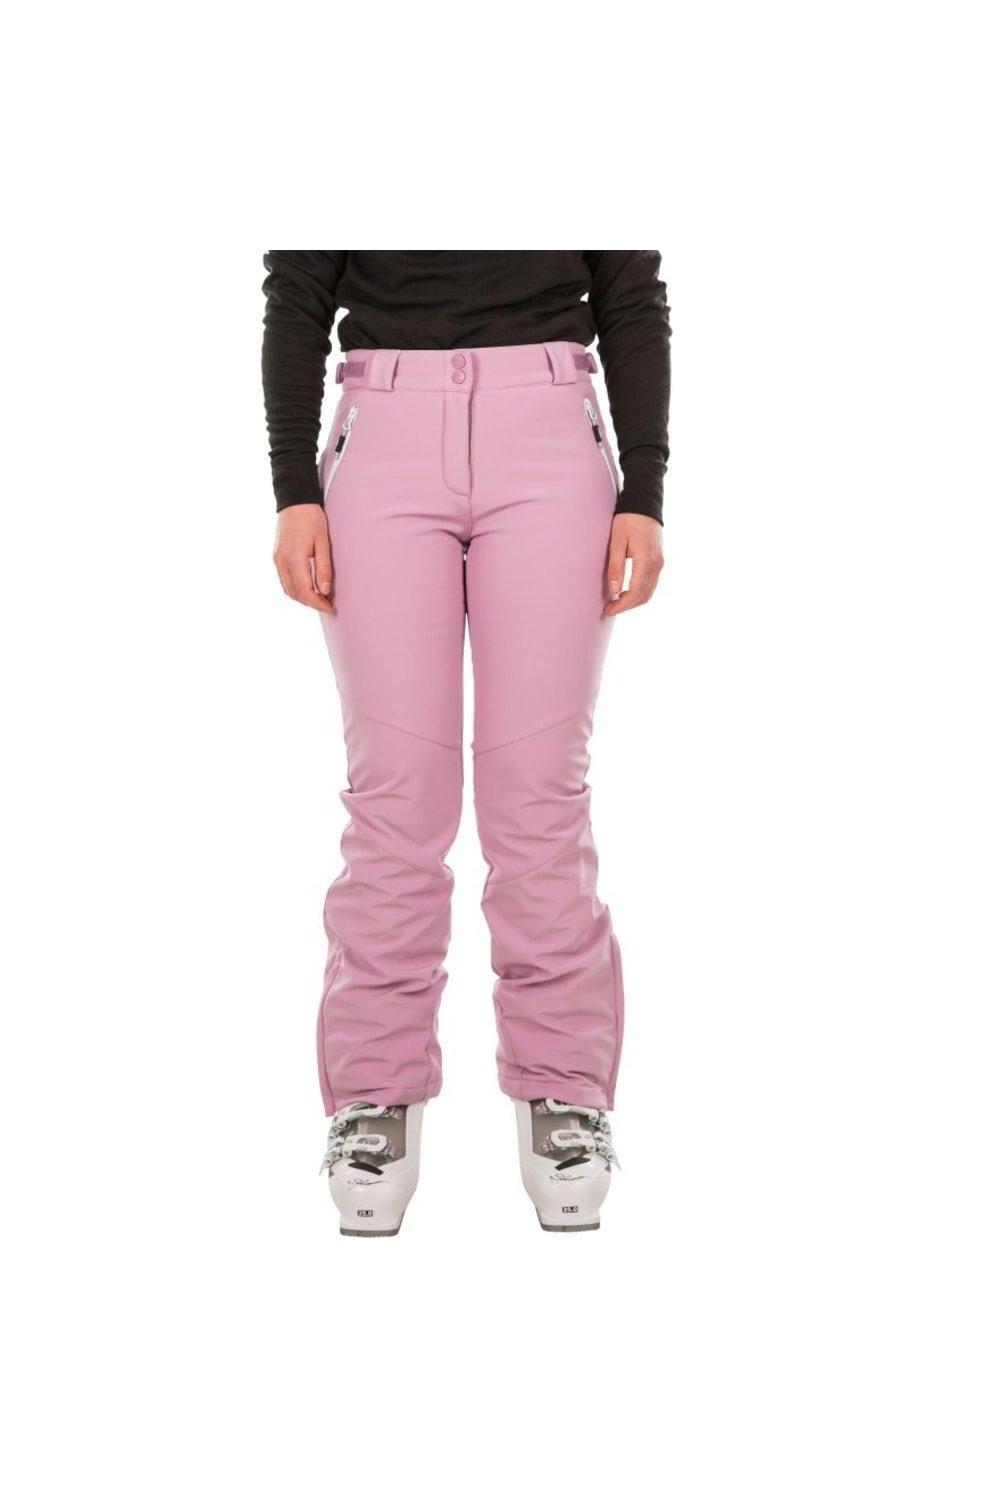 Лыжные брюки Lois Trespass, розовый брюки trespass clements черный